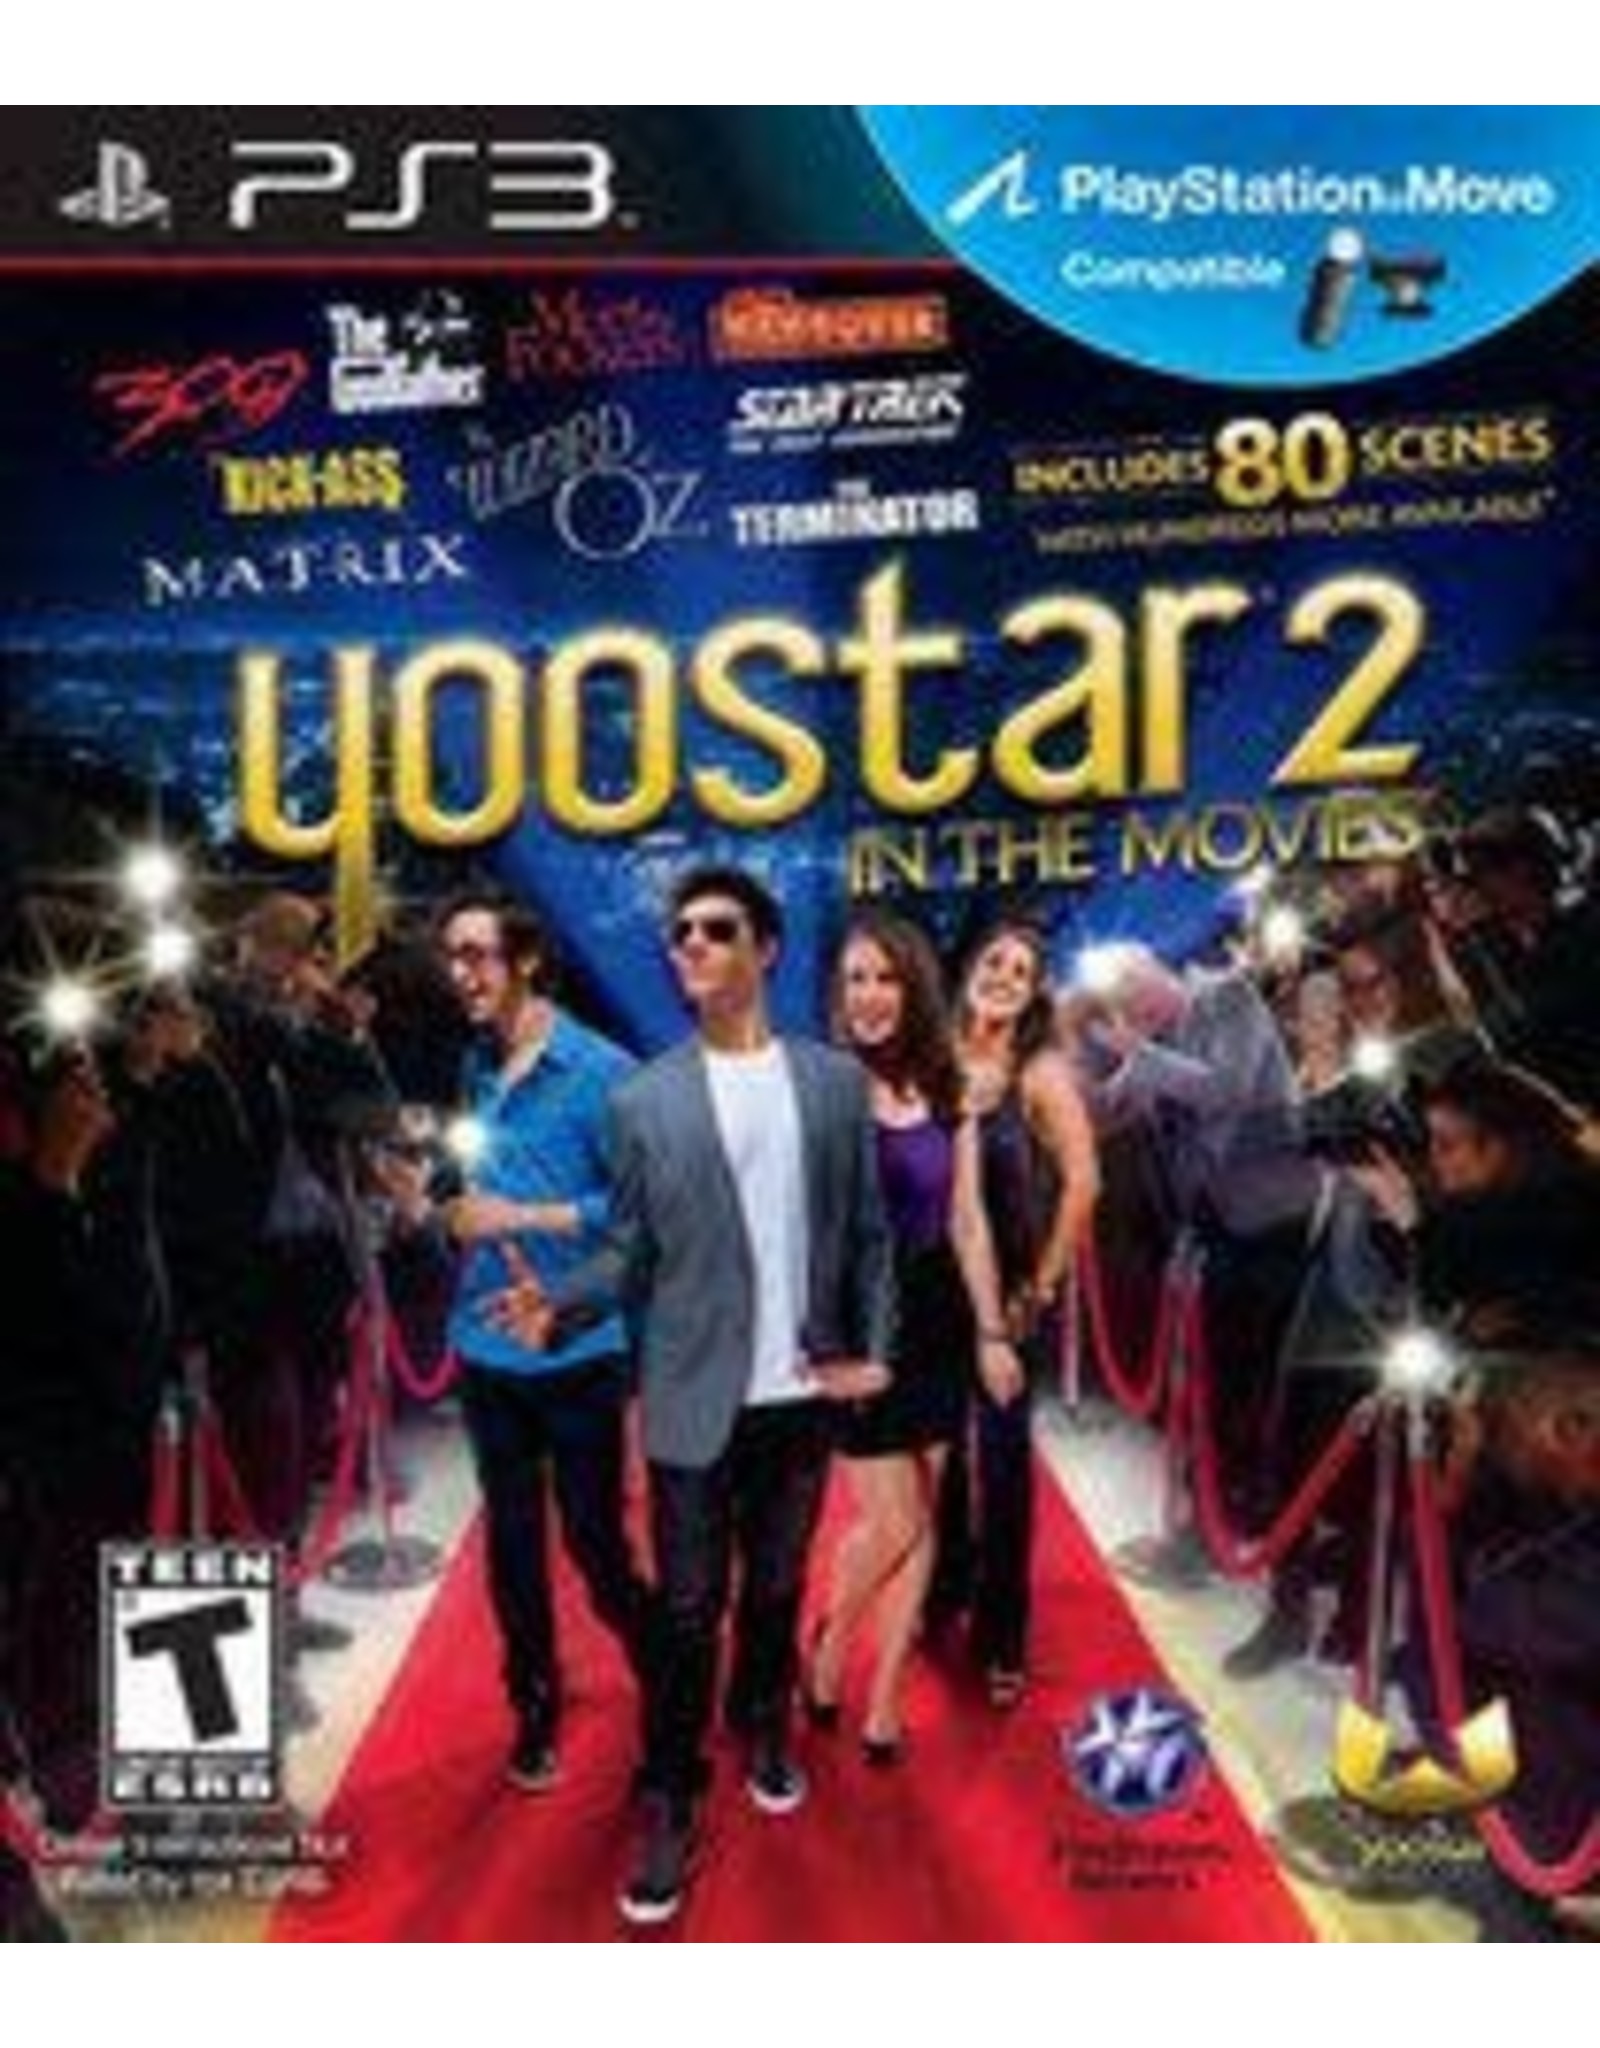 Playstation 3 YooStar 2 (CiB)